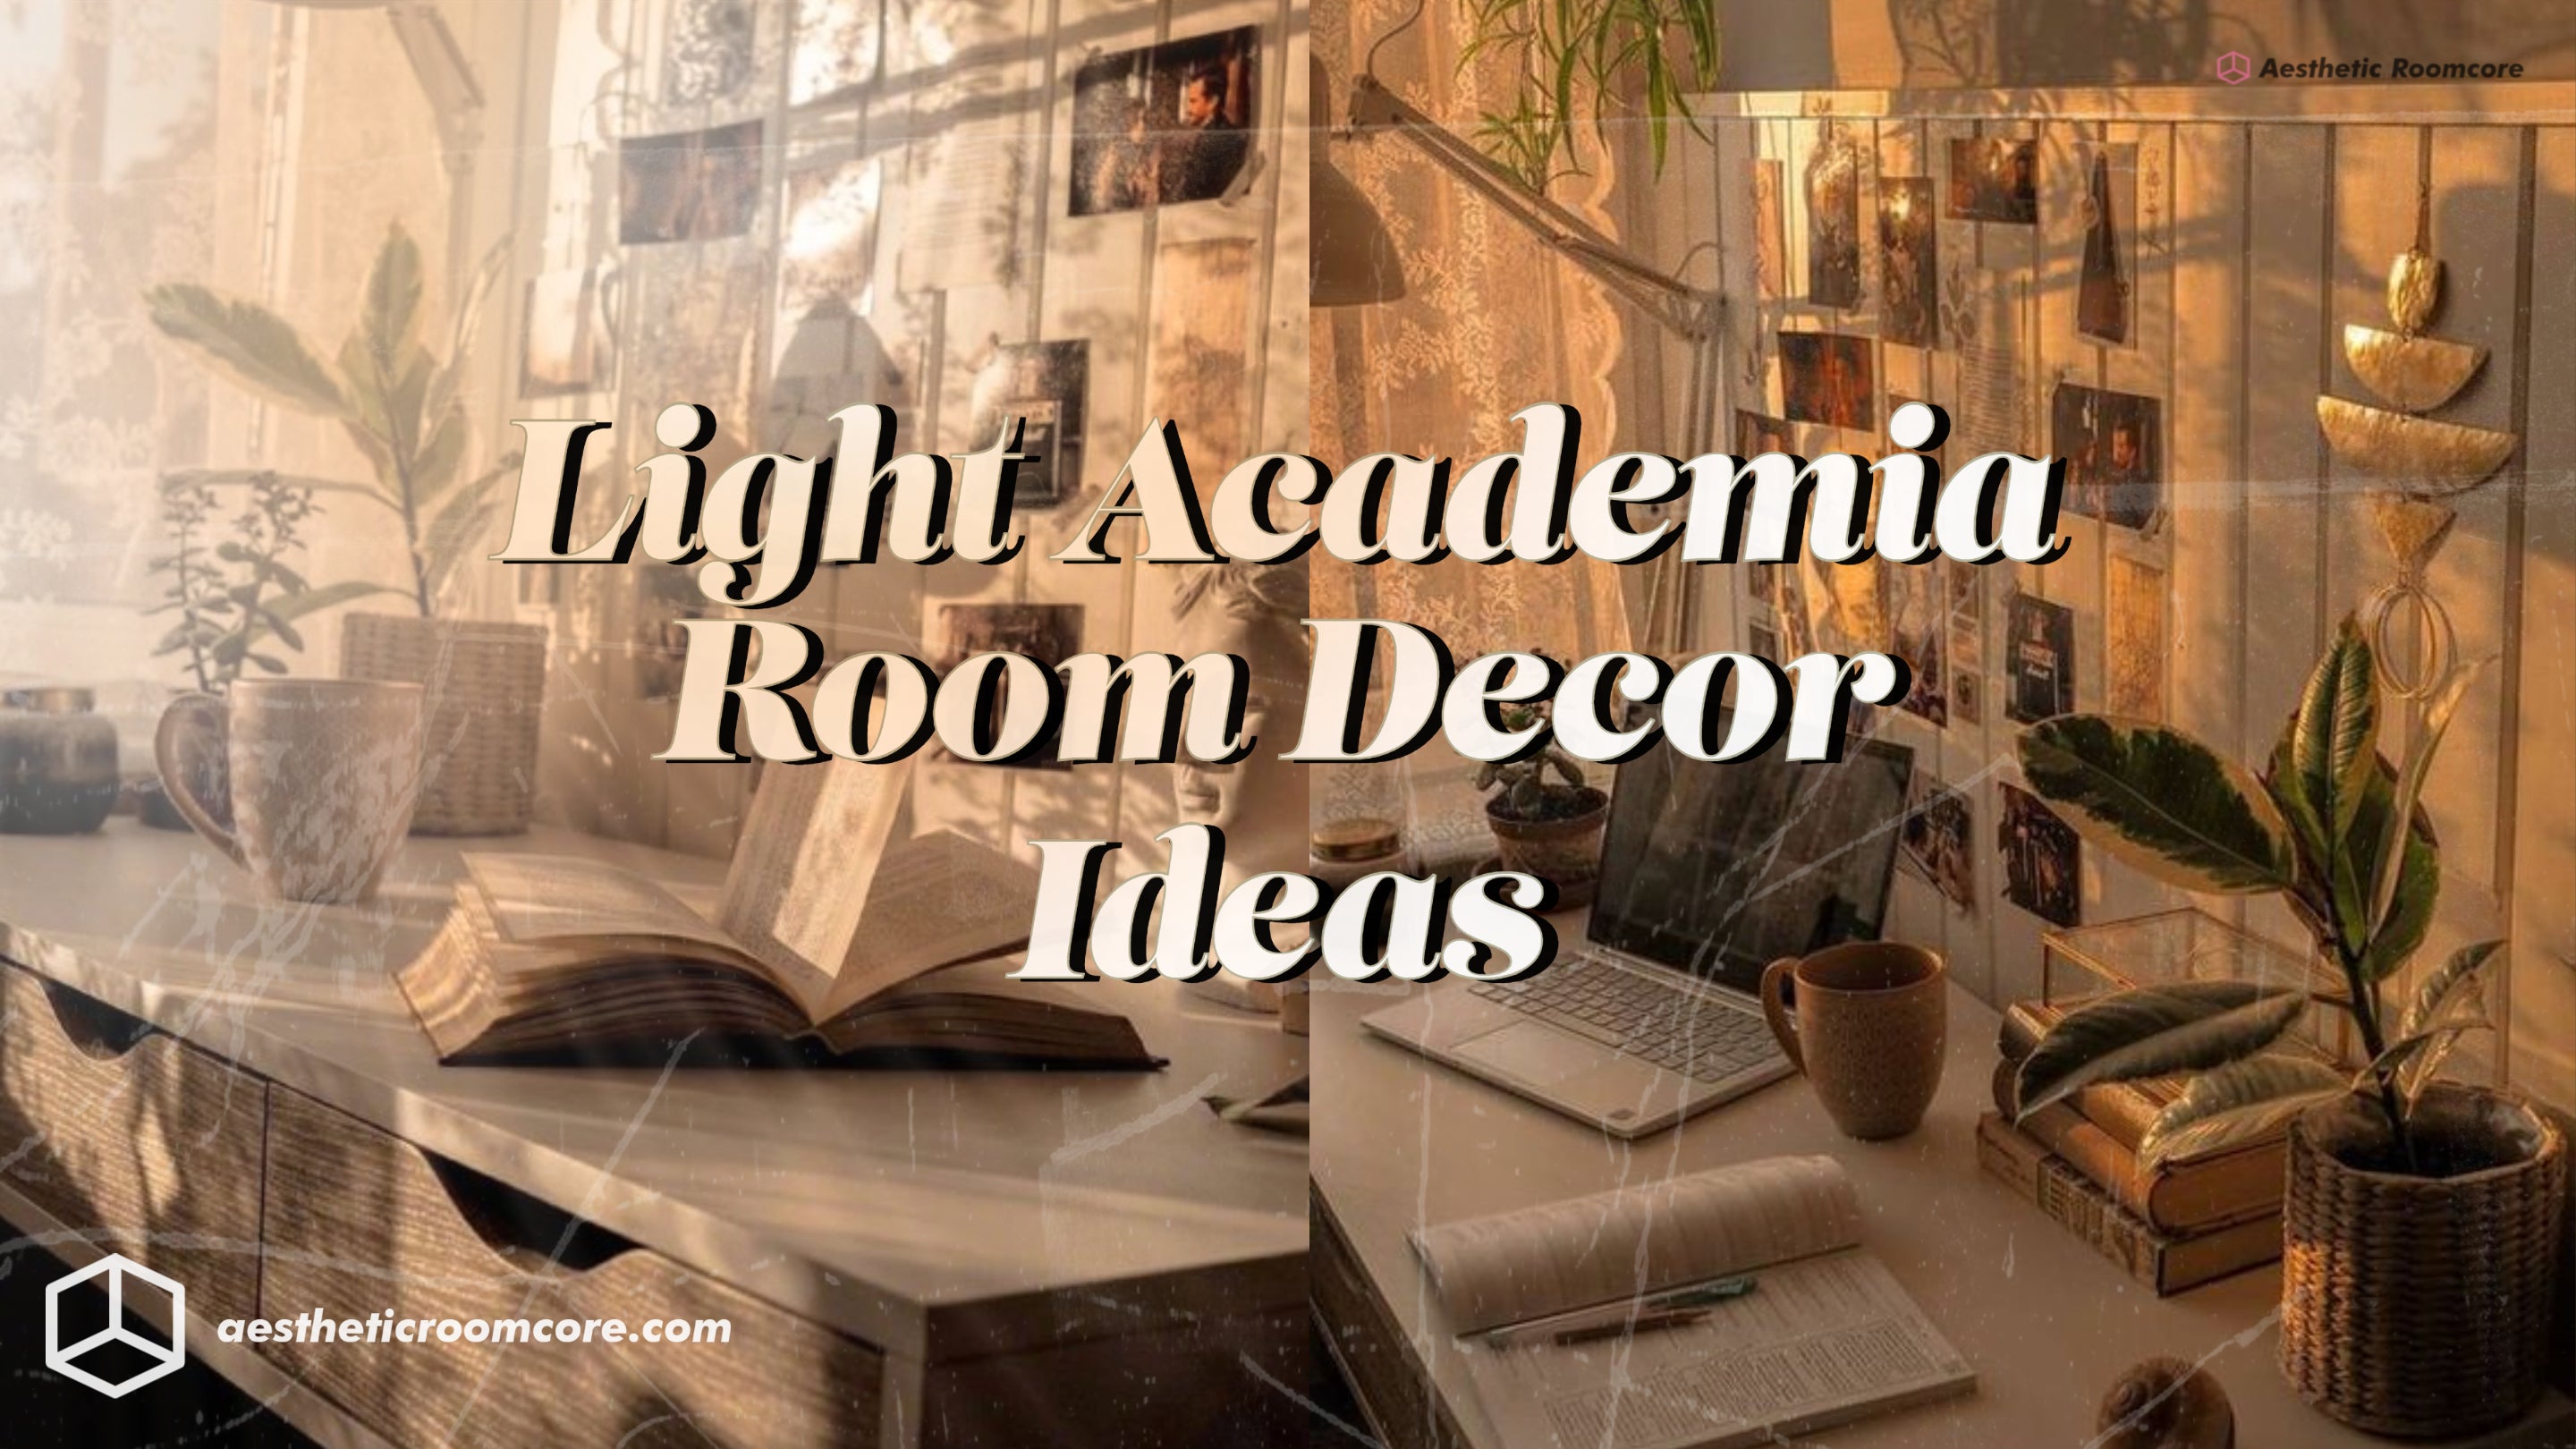 Light Academia Bedroom Decor